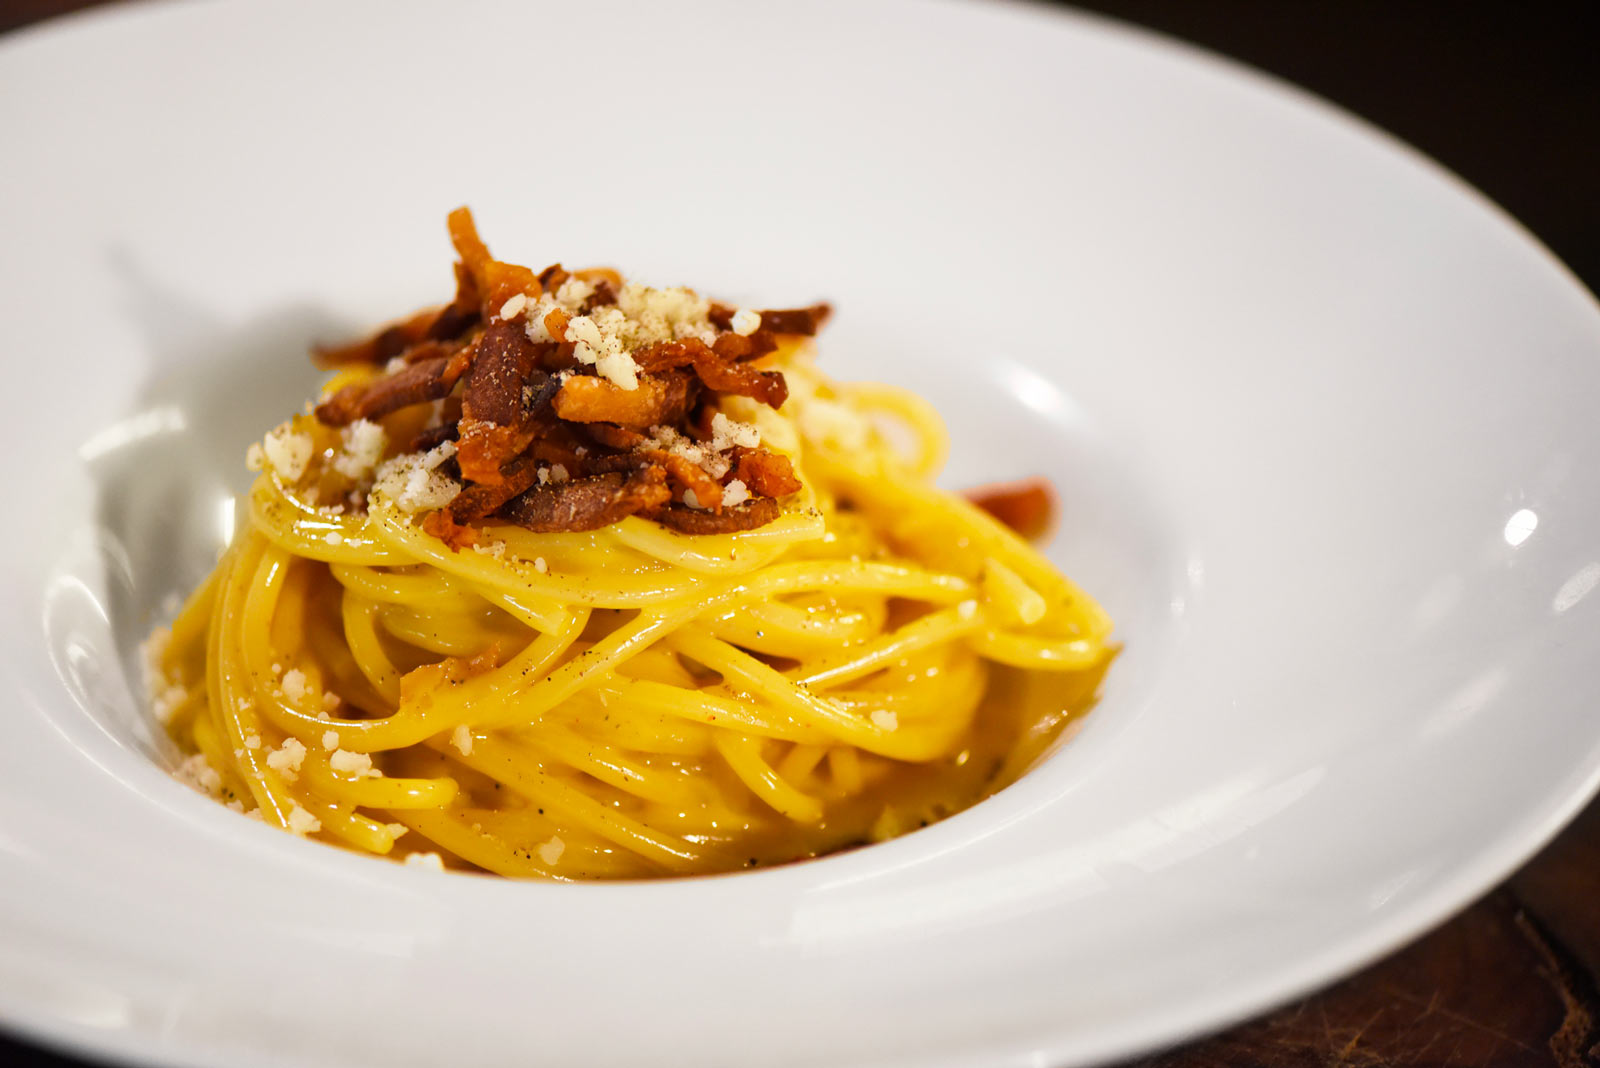 Carbonara: Spaghettone di Gragnano, Uova Bio, Guanciale di Cinta